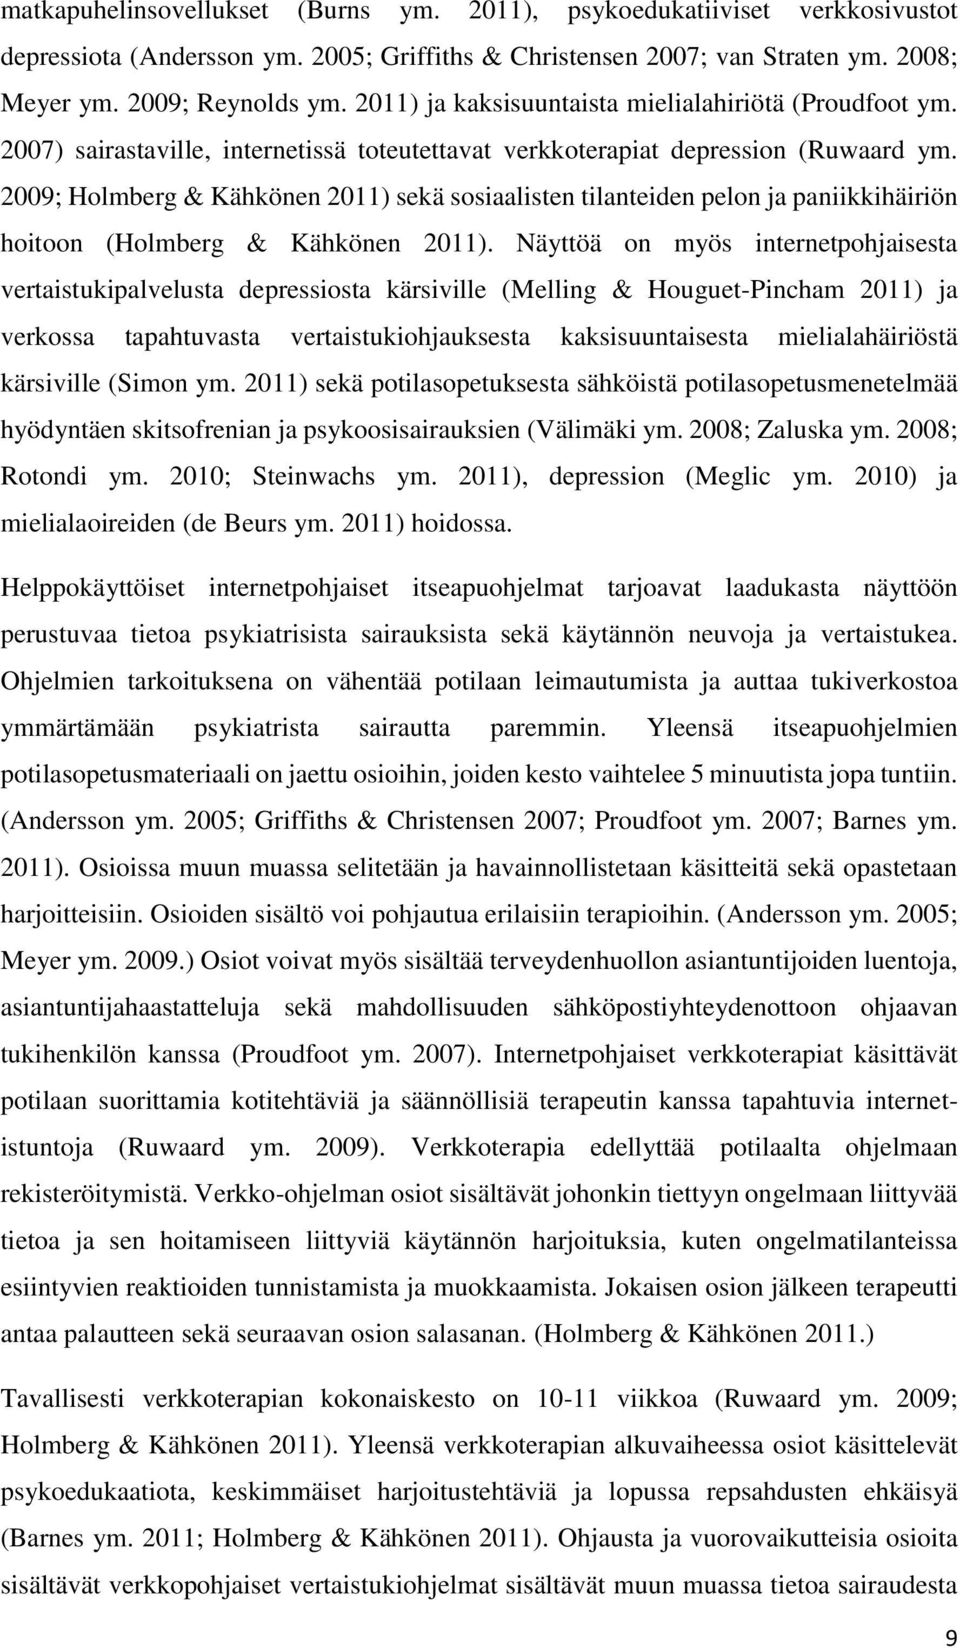 2009; Holmberg & Kähkönen 2011) sekä sosiaalisten tilanteiden pelon ja paniikkihäiriön hoitoon (Holmberg & Kähkönen 2011).